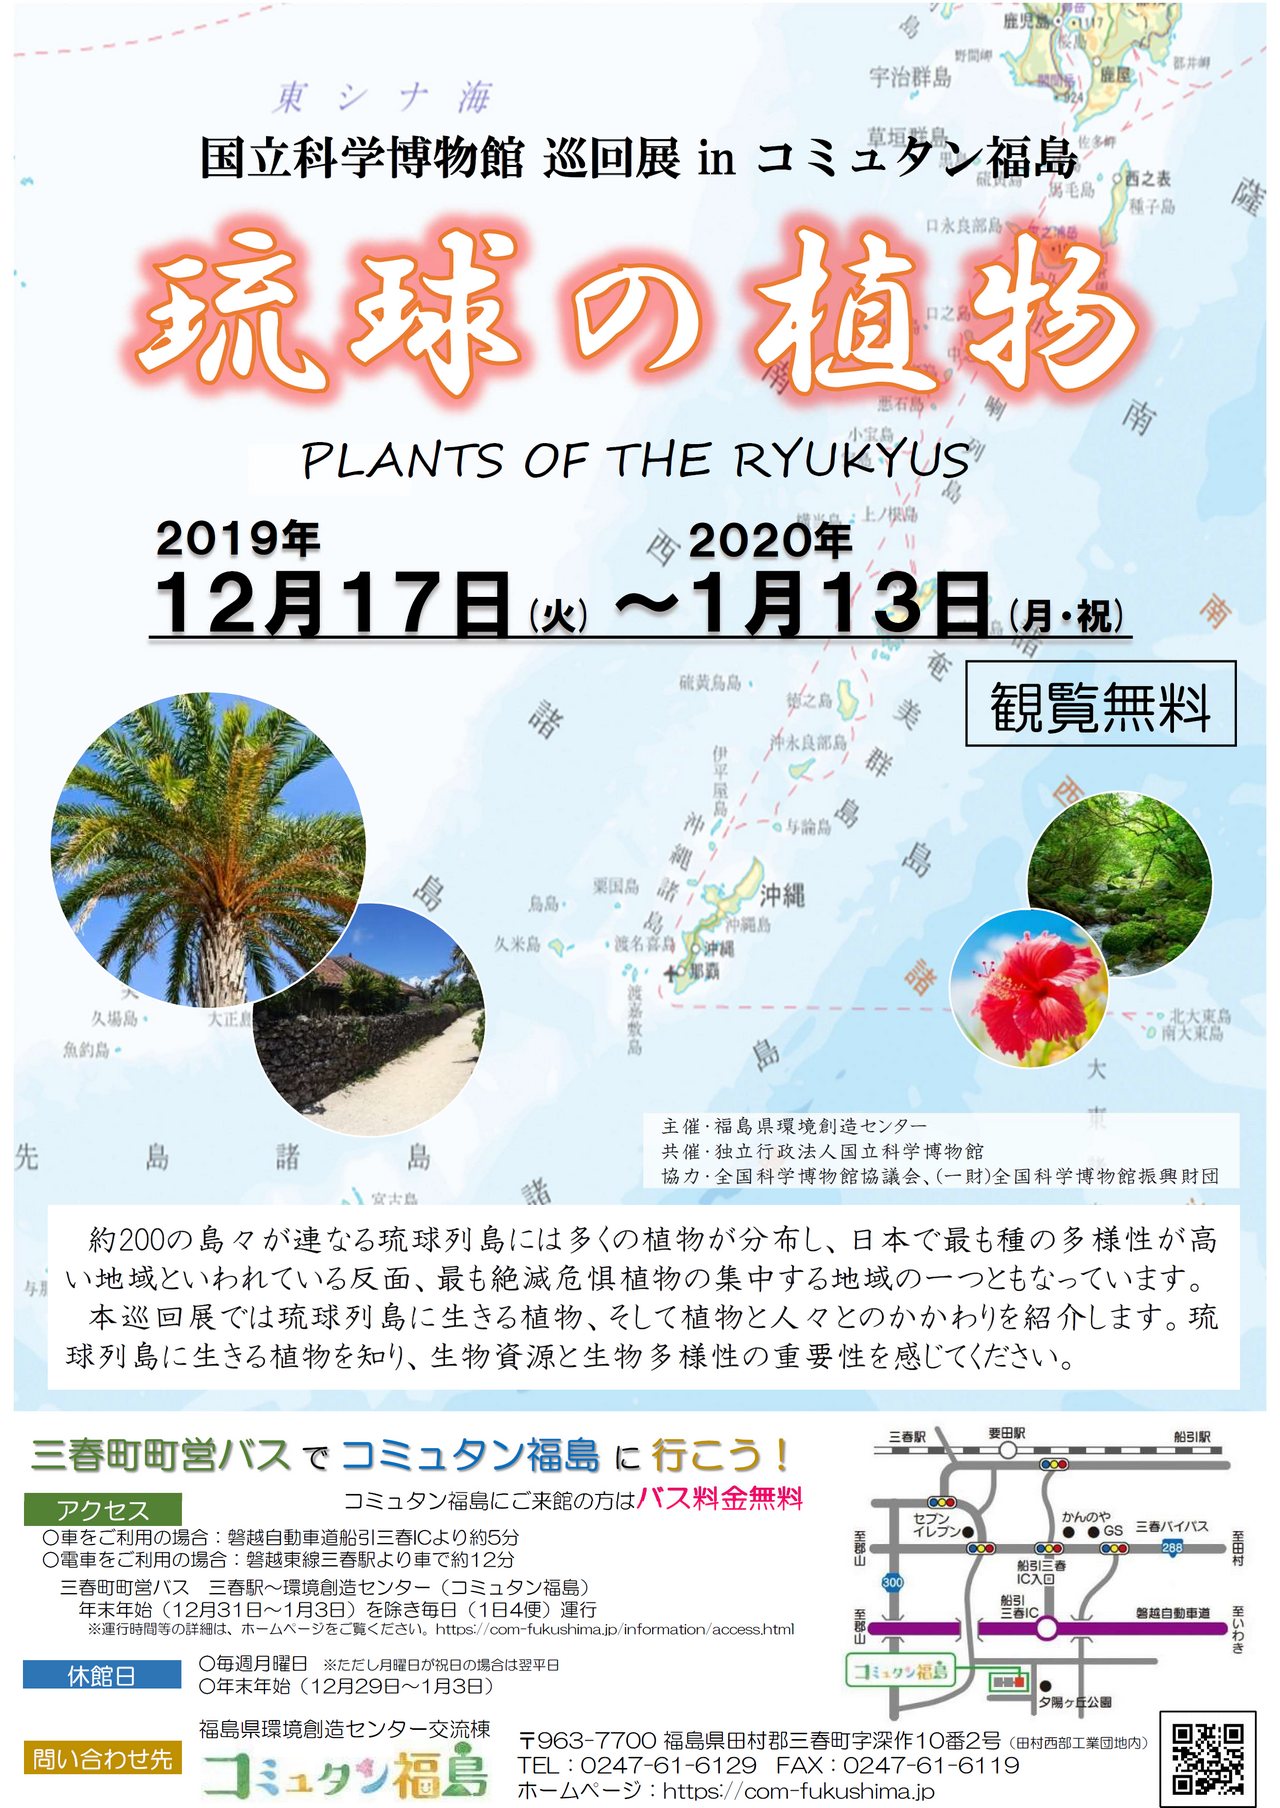 「琉球の植物」国立科学博物館巡回展 in コミュタン福島